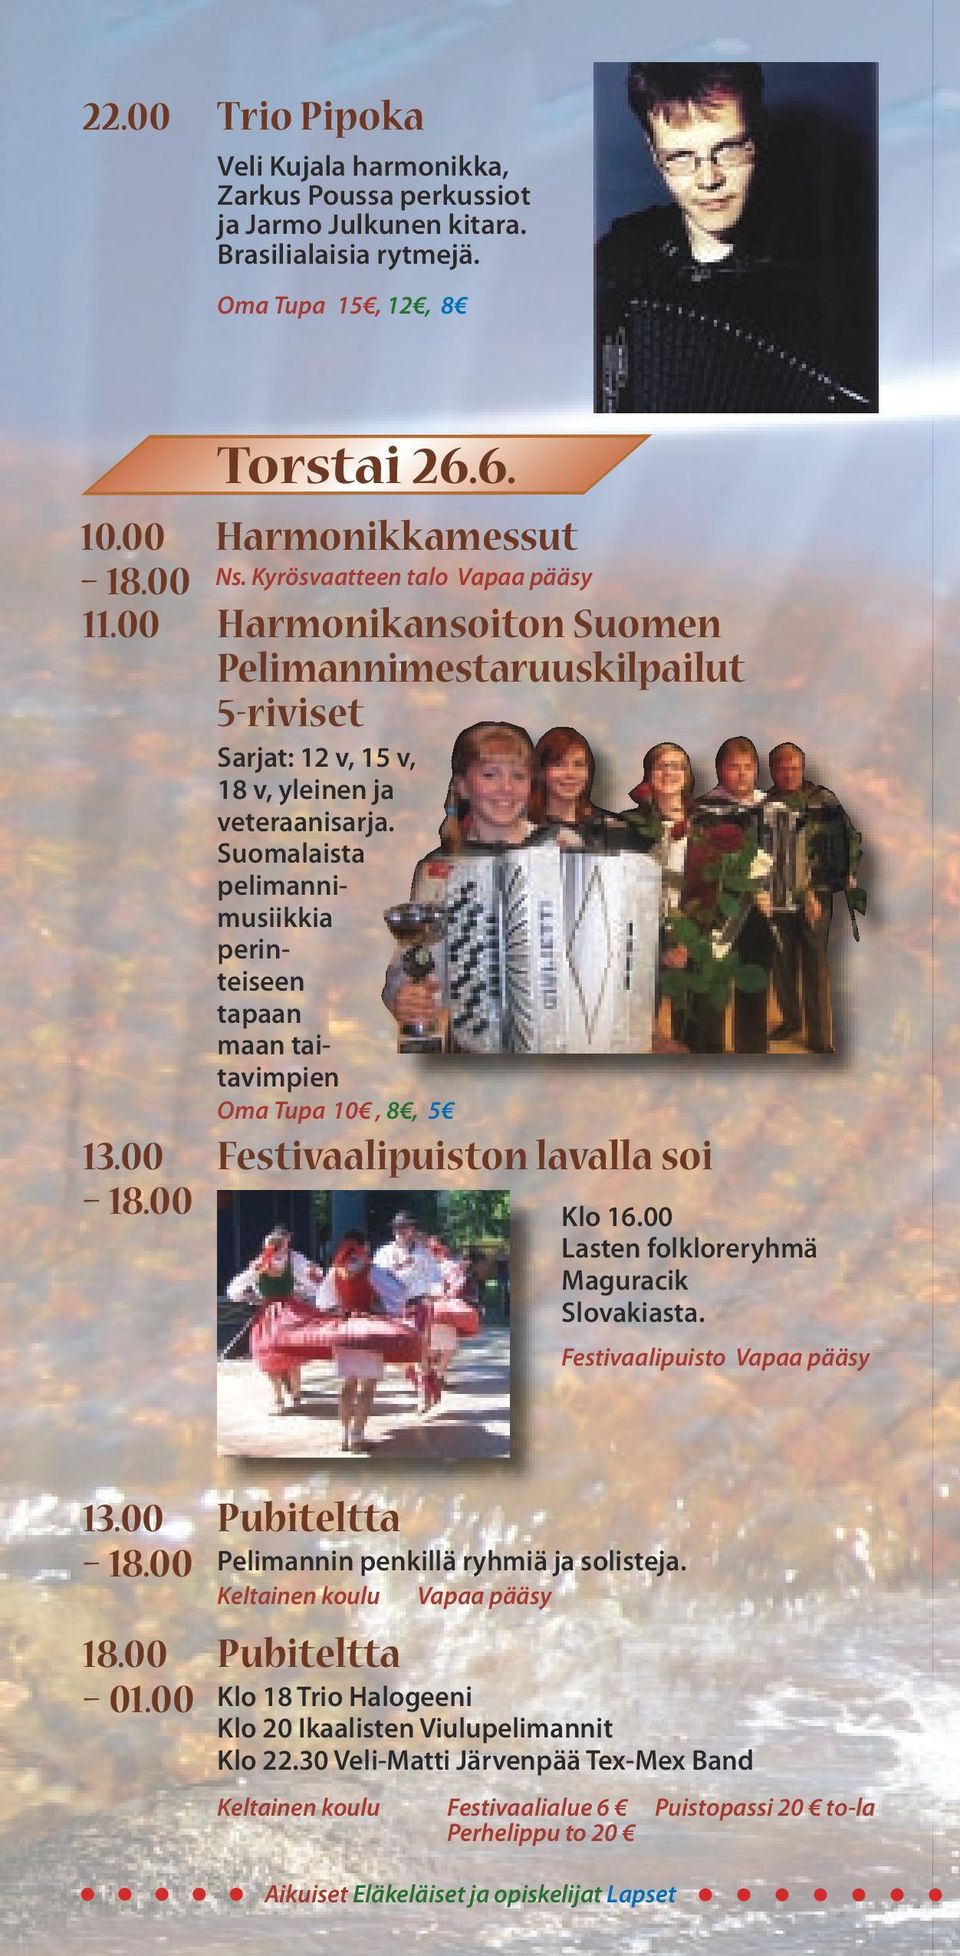 Suomalaista pelimannimusiikkia perinteiseen tapaan maan taitavimpien Oma Tupa 10, 8, 5 13.00 Festivaalipuiston lavalla soi 18.00 Klo 16.00 Lasten folkloreryhmä Maguracik Slovakiasta.